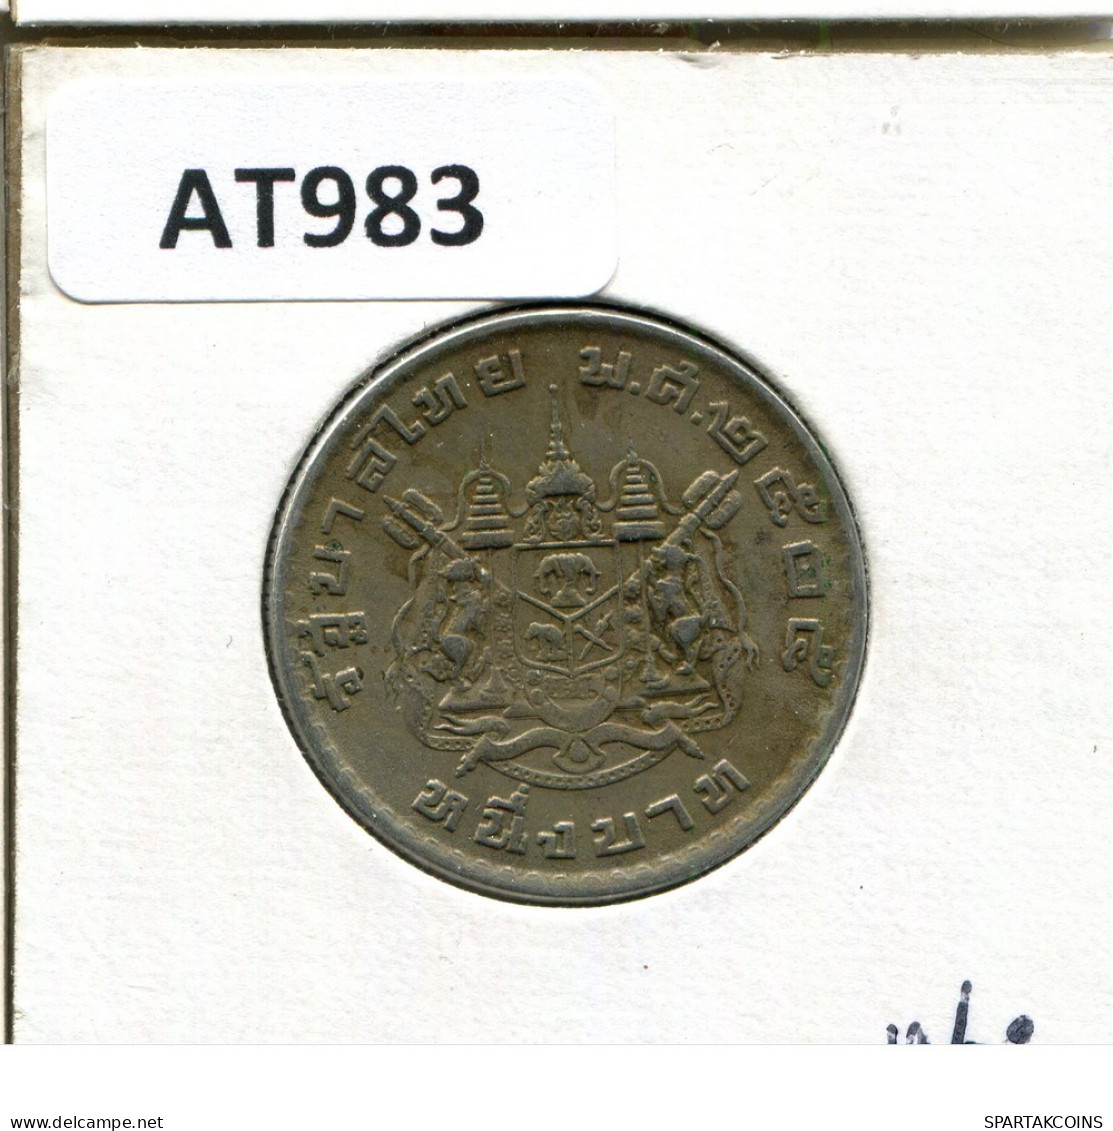 1 BAHT 1962 THAILAND Coin #AT983.U.A - Thaïlande